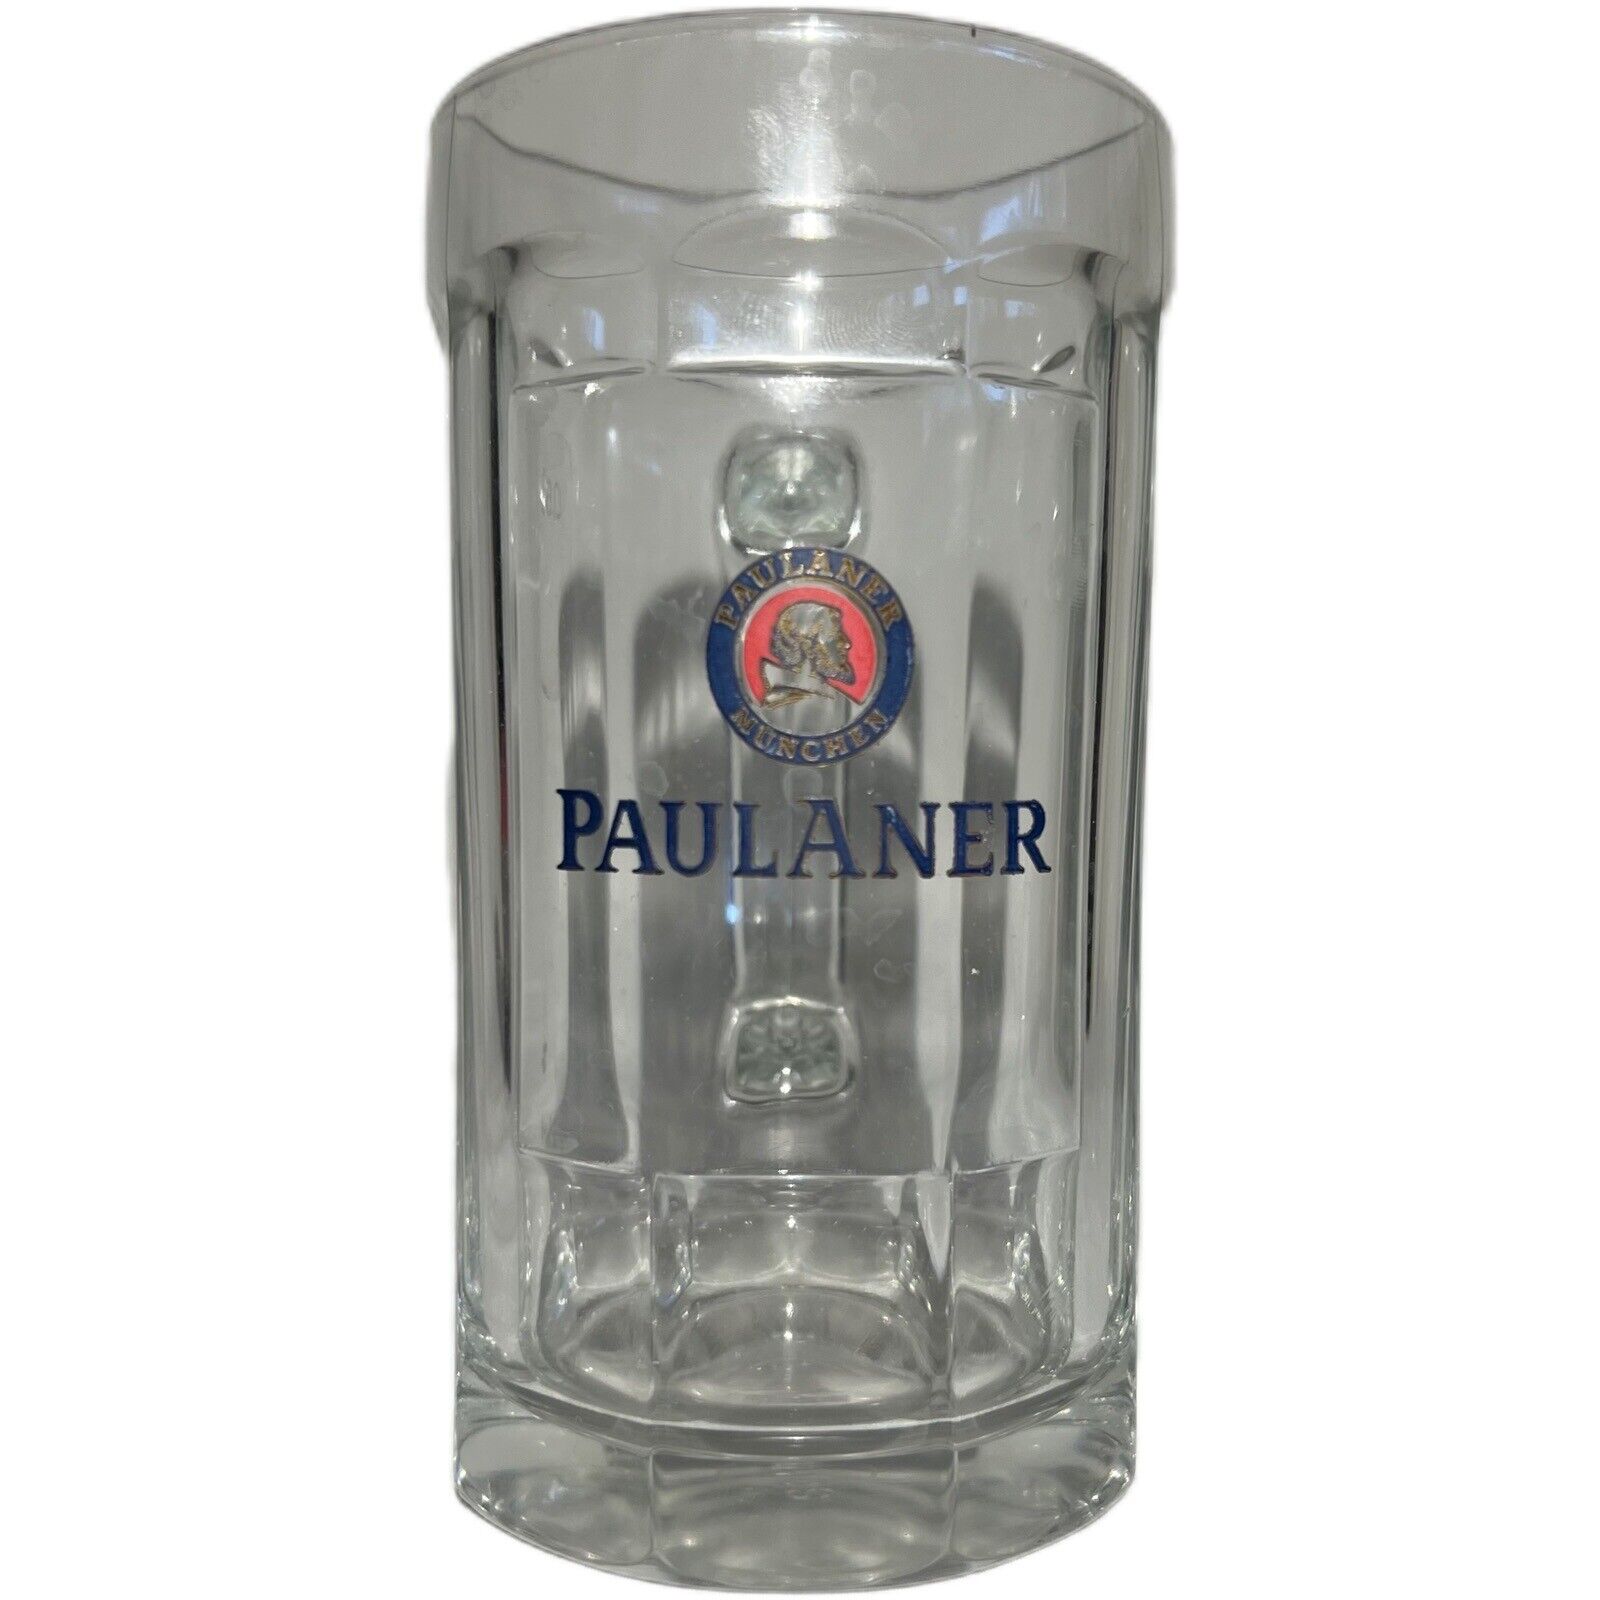 Paulaner Munchen Beer Mug With Handle | 24 Oz Capacity